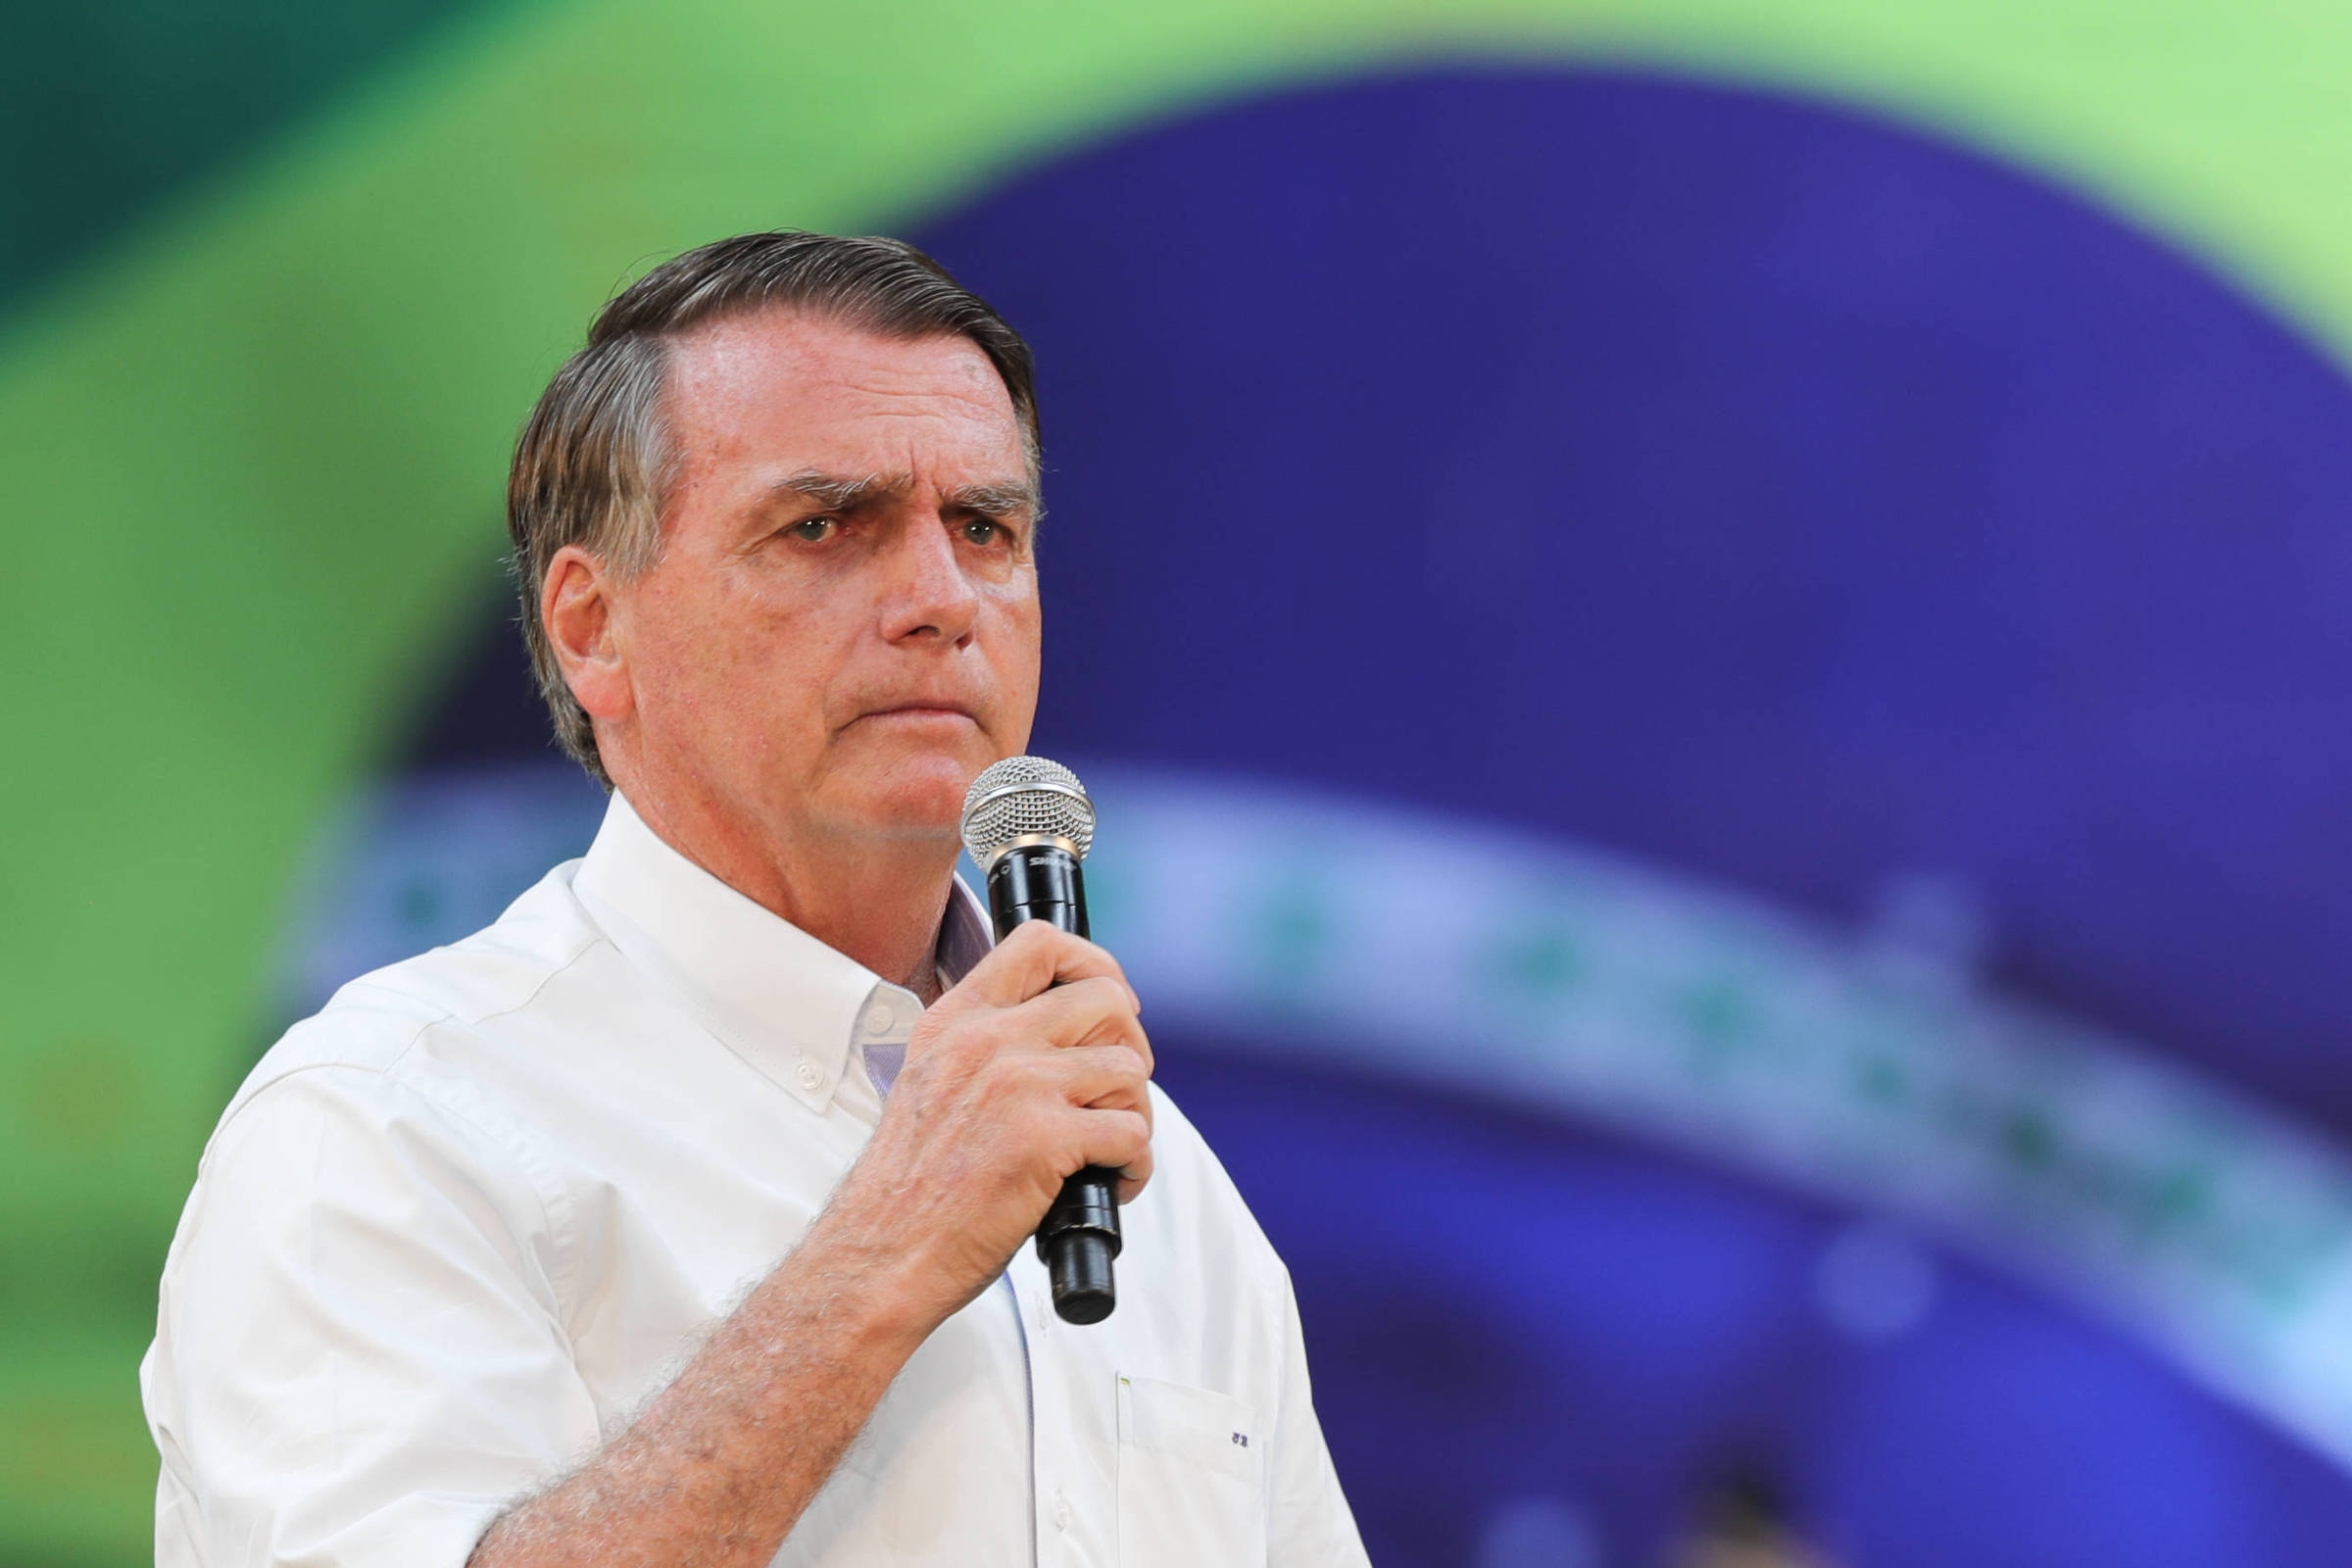 Bolsonaro diz que não precisa de ‘cartinha’ para defender democracia – 27/07/2022 – Poder